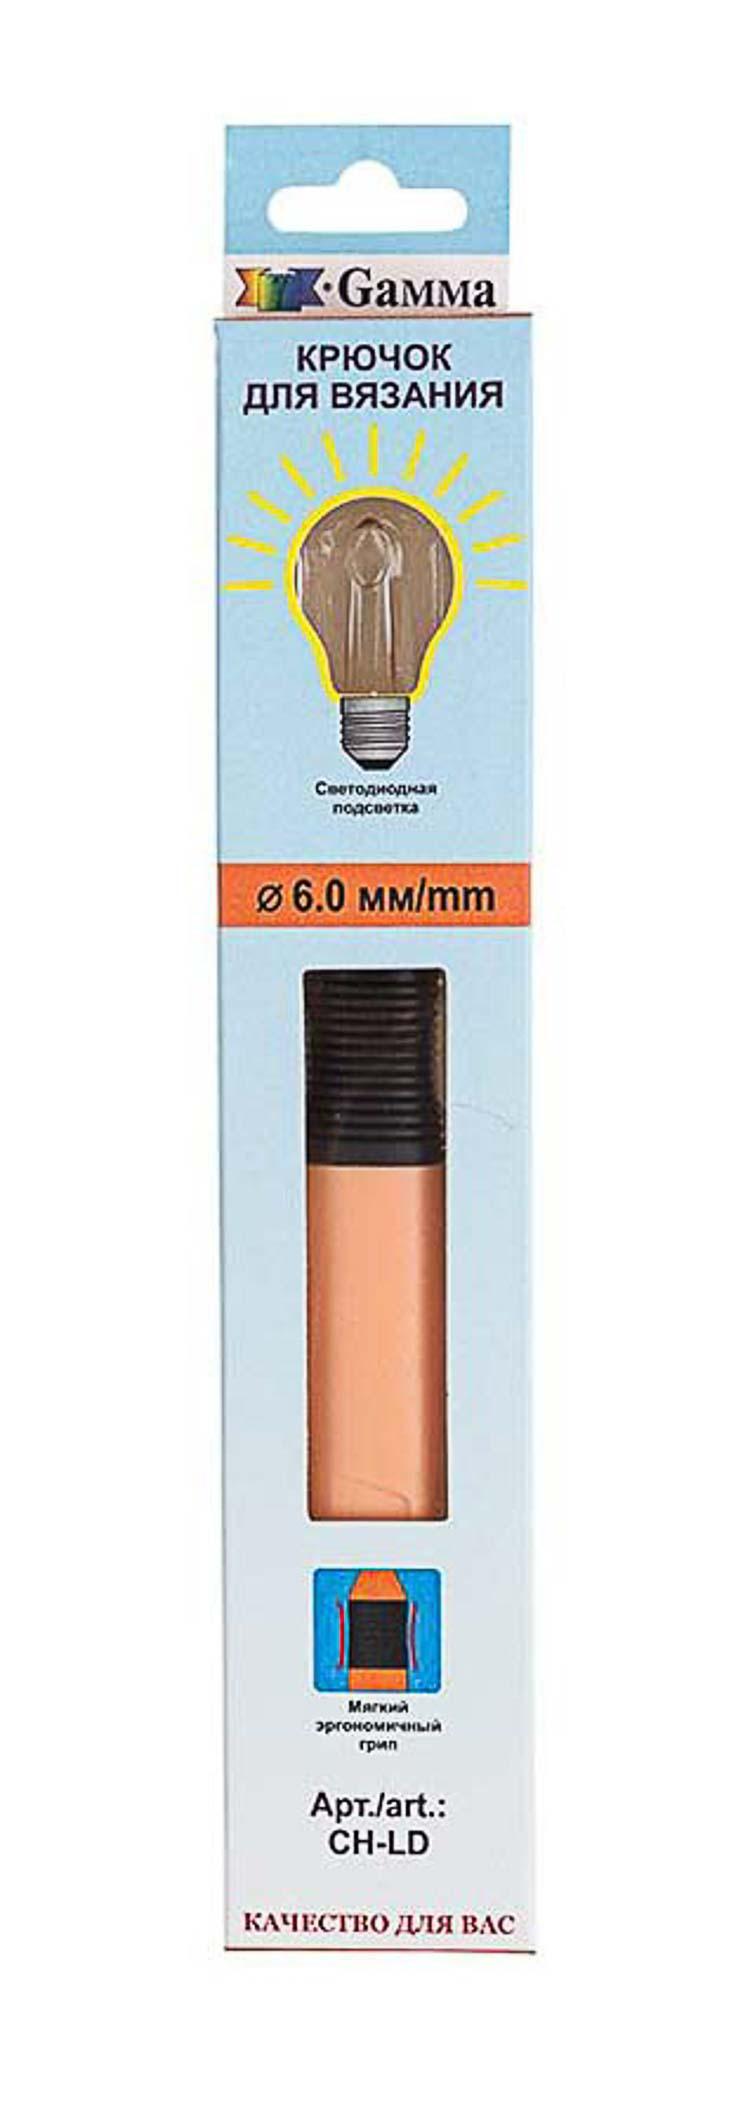 Для вязания Gamma CH-LD крючок с подсветкой пластик d 6.0 мм 15.6 см в картонной упаковке с европодвесом